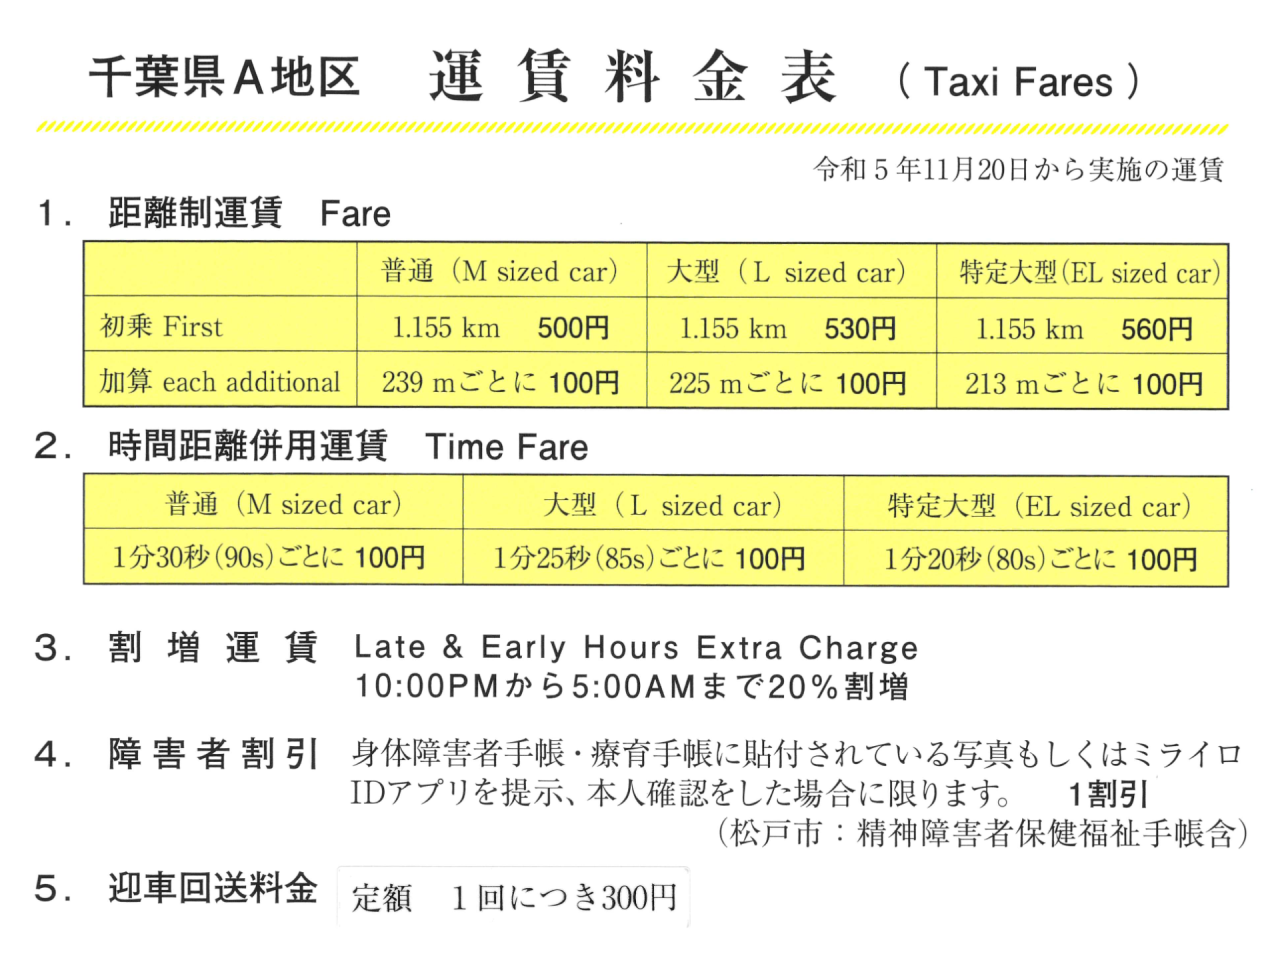 タクシー運賃改定のお知らせ